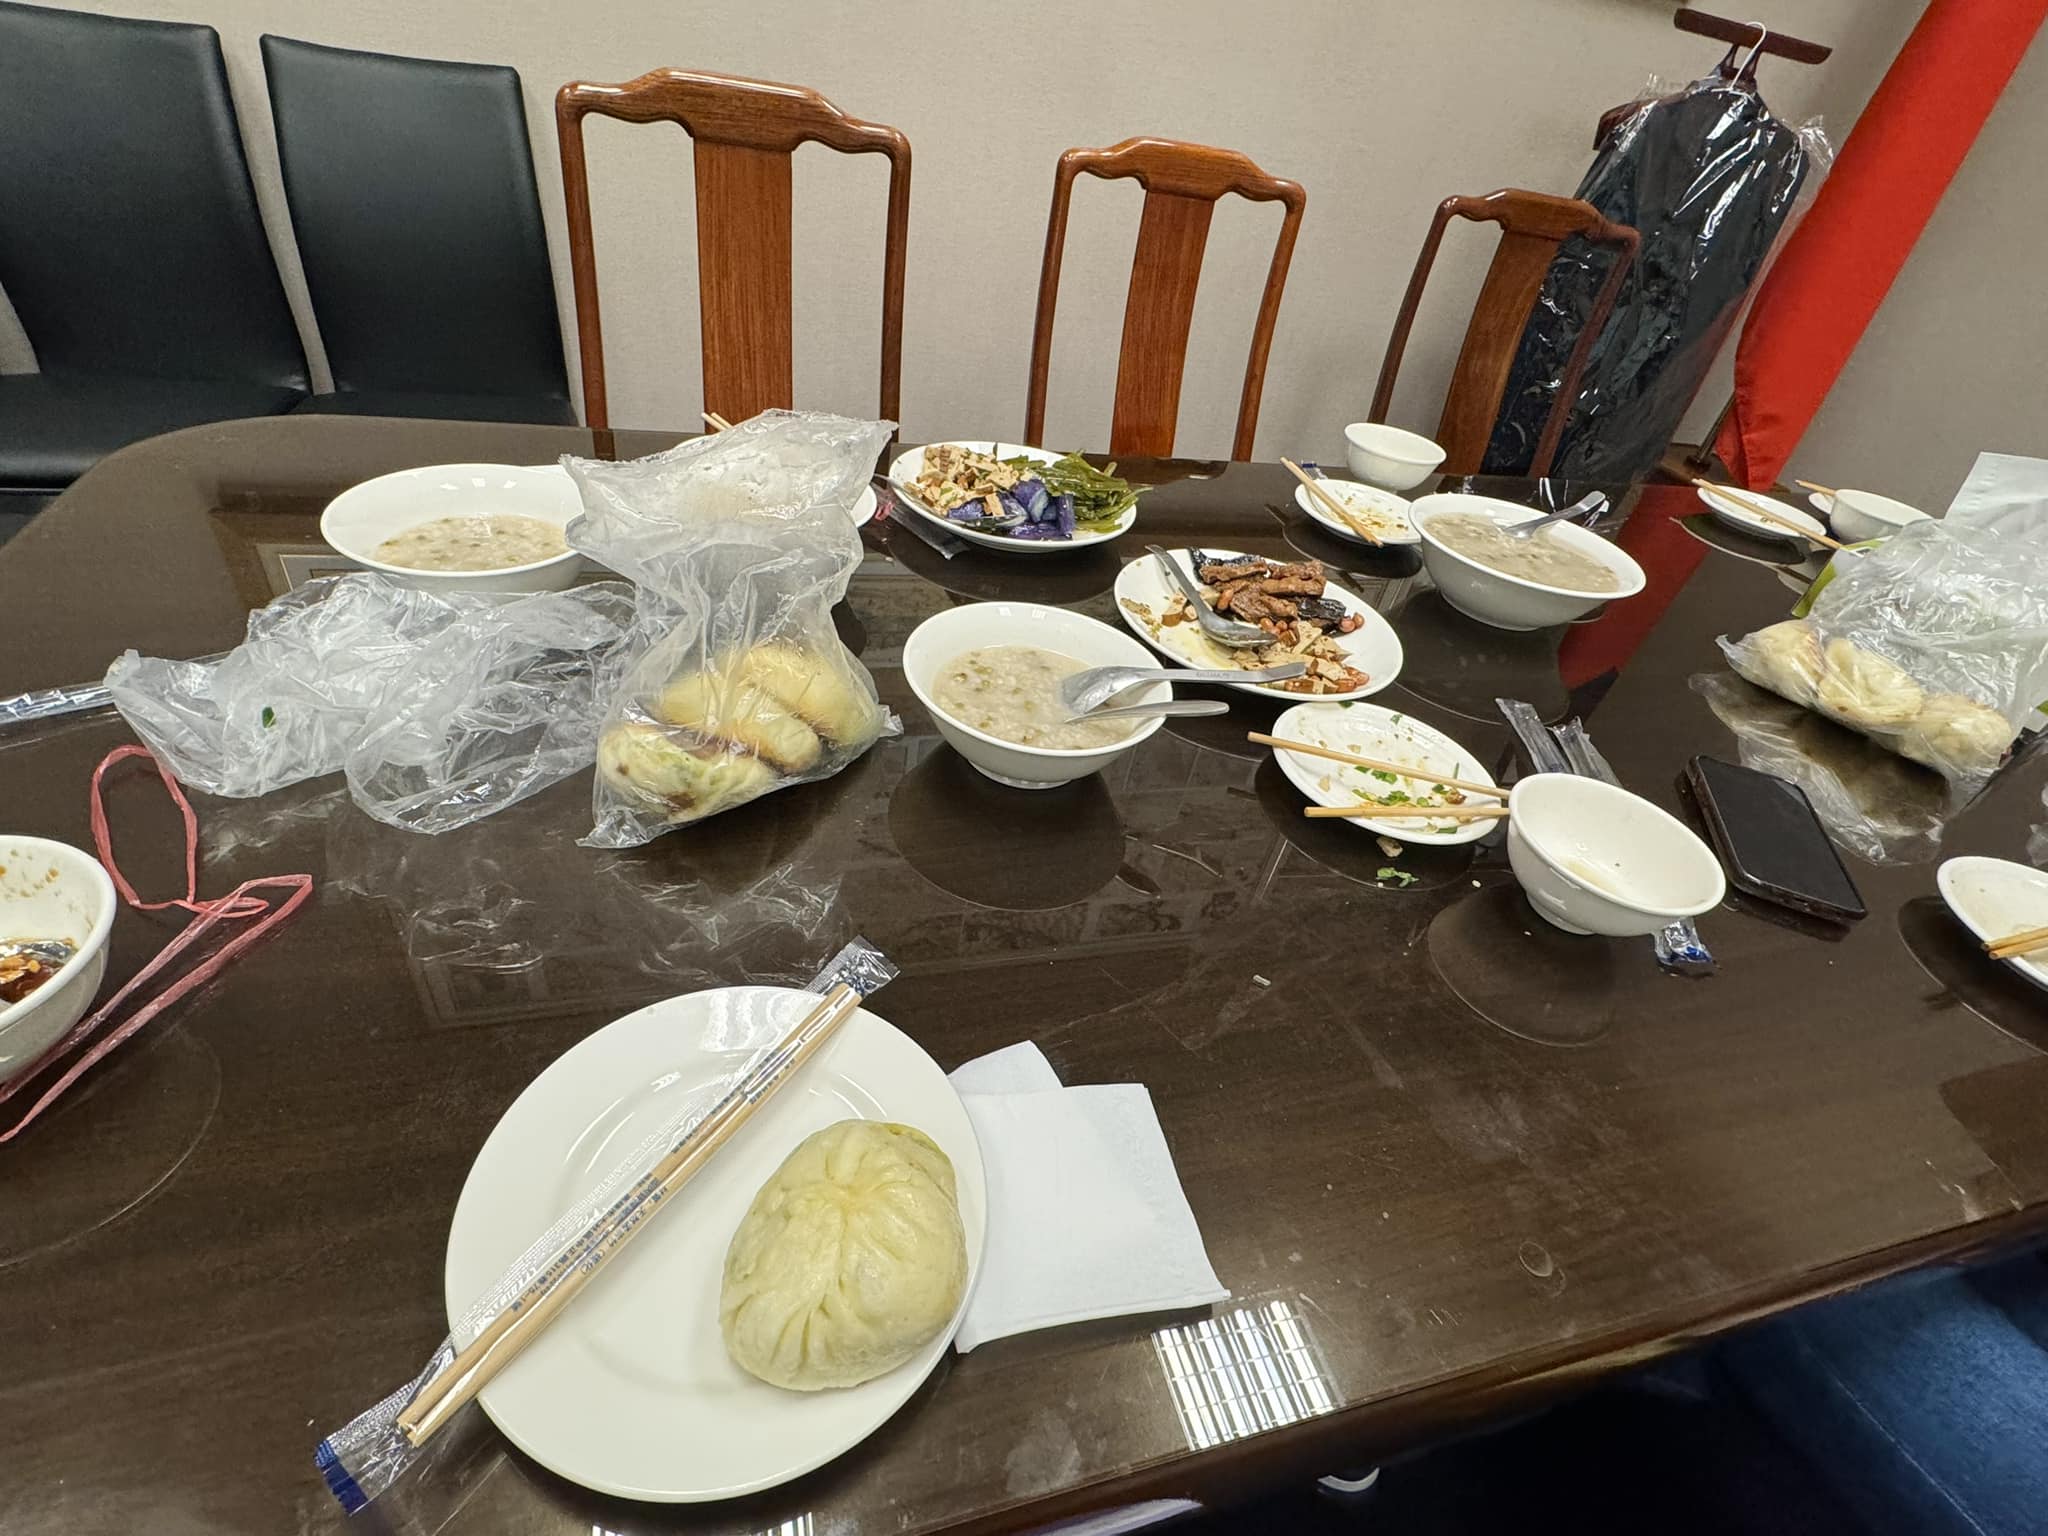 国民党立法院党团书记长洪孟楷今天在脸书贴出一张桌子摆著几份小菜与水煎包。图／撷自洪孟楷脸书